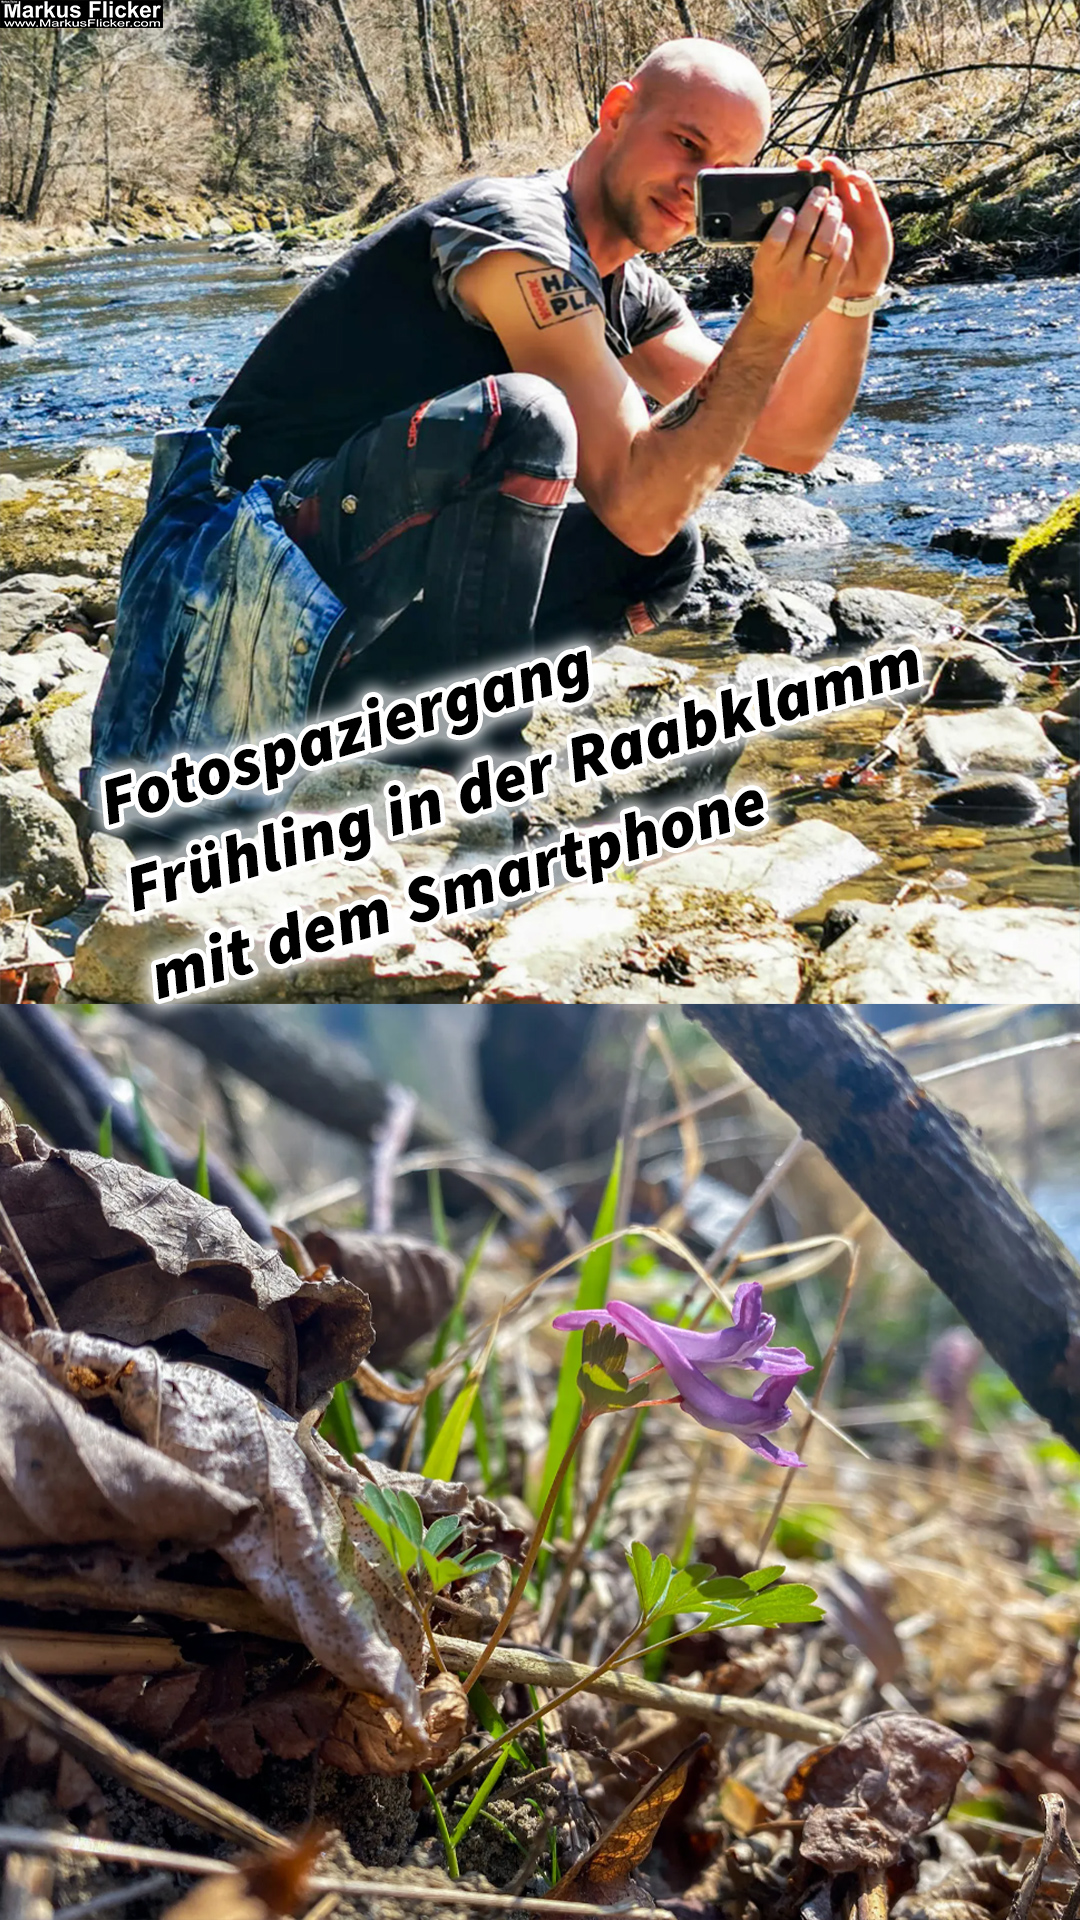 Fotospaziergang Steiermark im Frühling in der Raabklamm mit dem Smartphone Ein kreativer Spaziergang mit dem Handy in der Natur Österreich